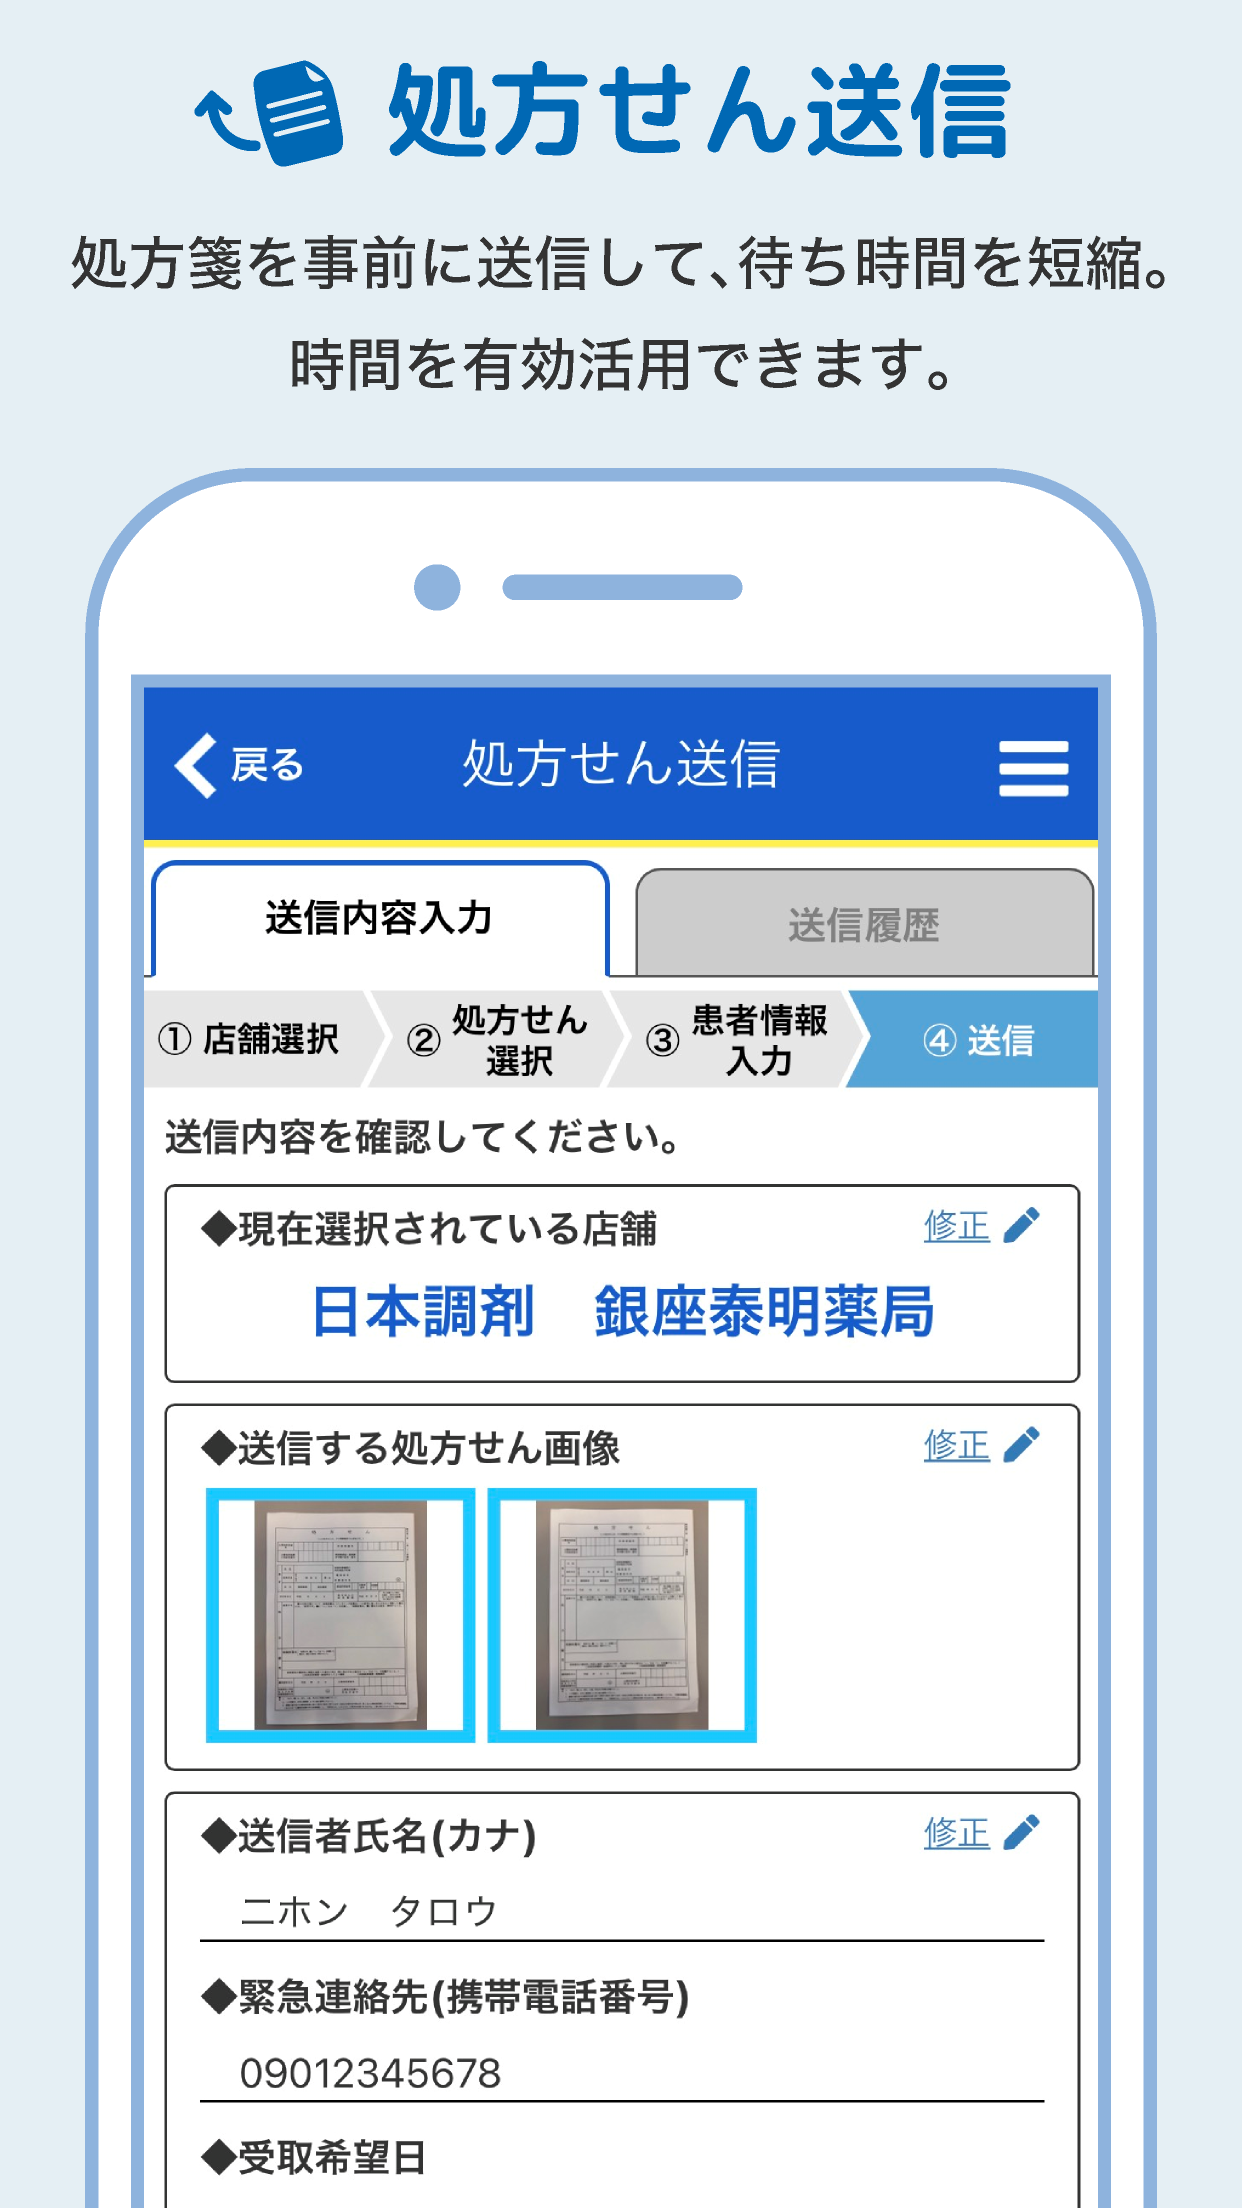 Android application 日本調剤のお薬手帳プラス-処方箋送信・お薬情報をアプリで管理 screenshort